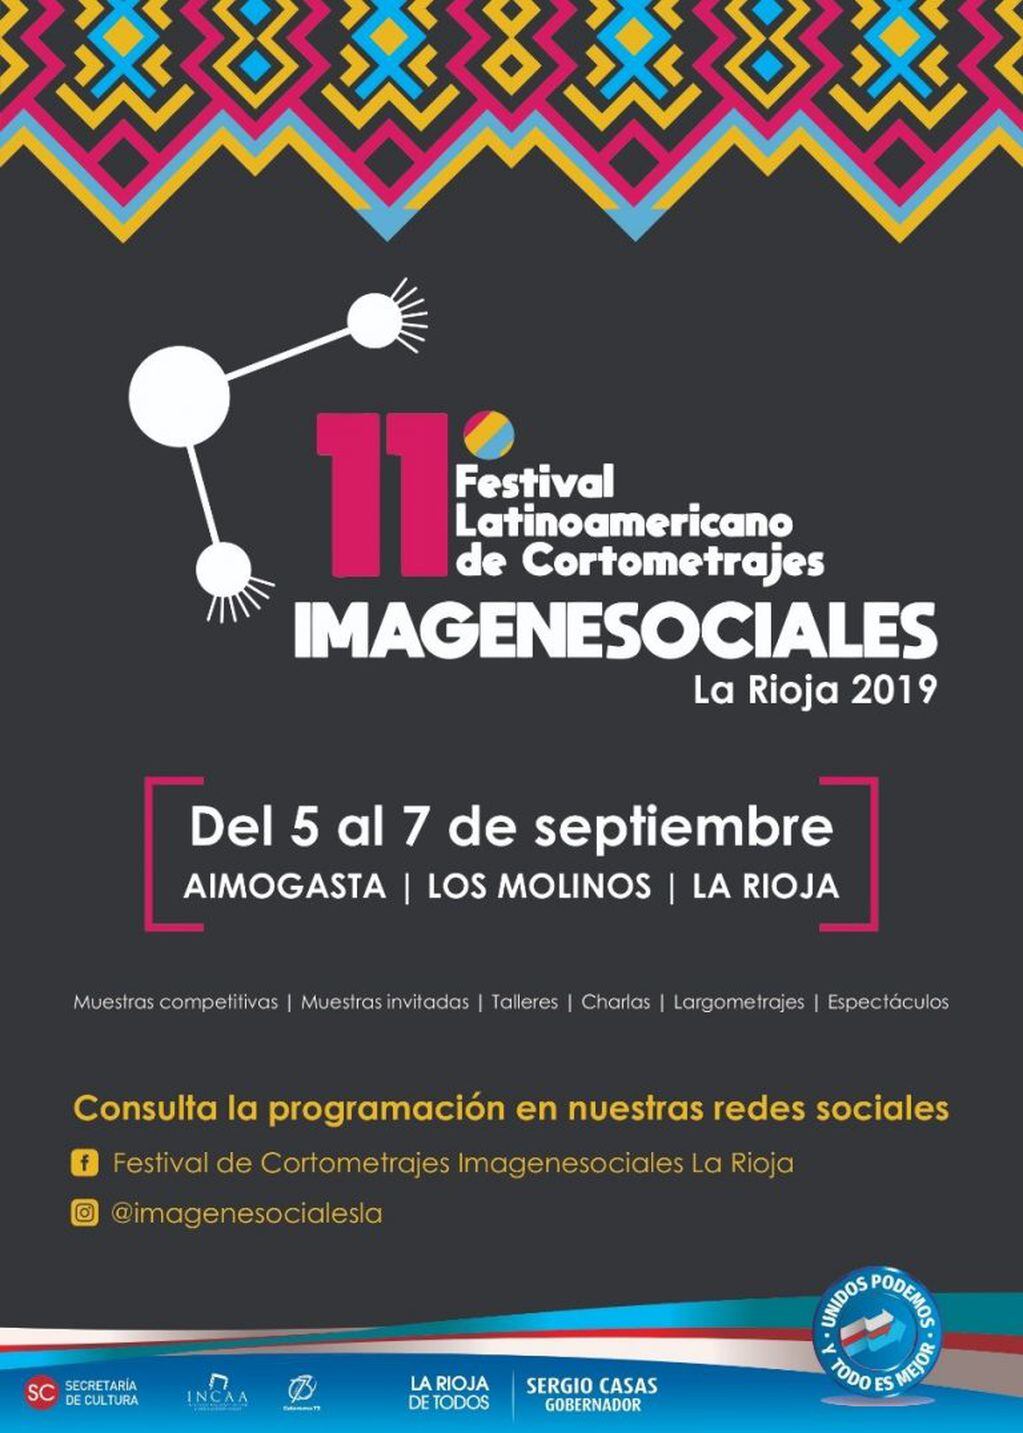 La Secretaría de Cultura anuncia las actividades del 11° Festival de Cortometrajes ImágeneSociales que se realizará del 5 al 7 de septiembre en Aimogasta, Los Molinos y La Rioja y tendrá muestras invitadas, en competencia, capacitaciones y presentación de largometrajes.